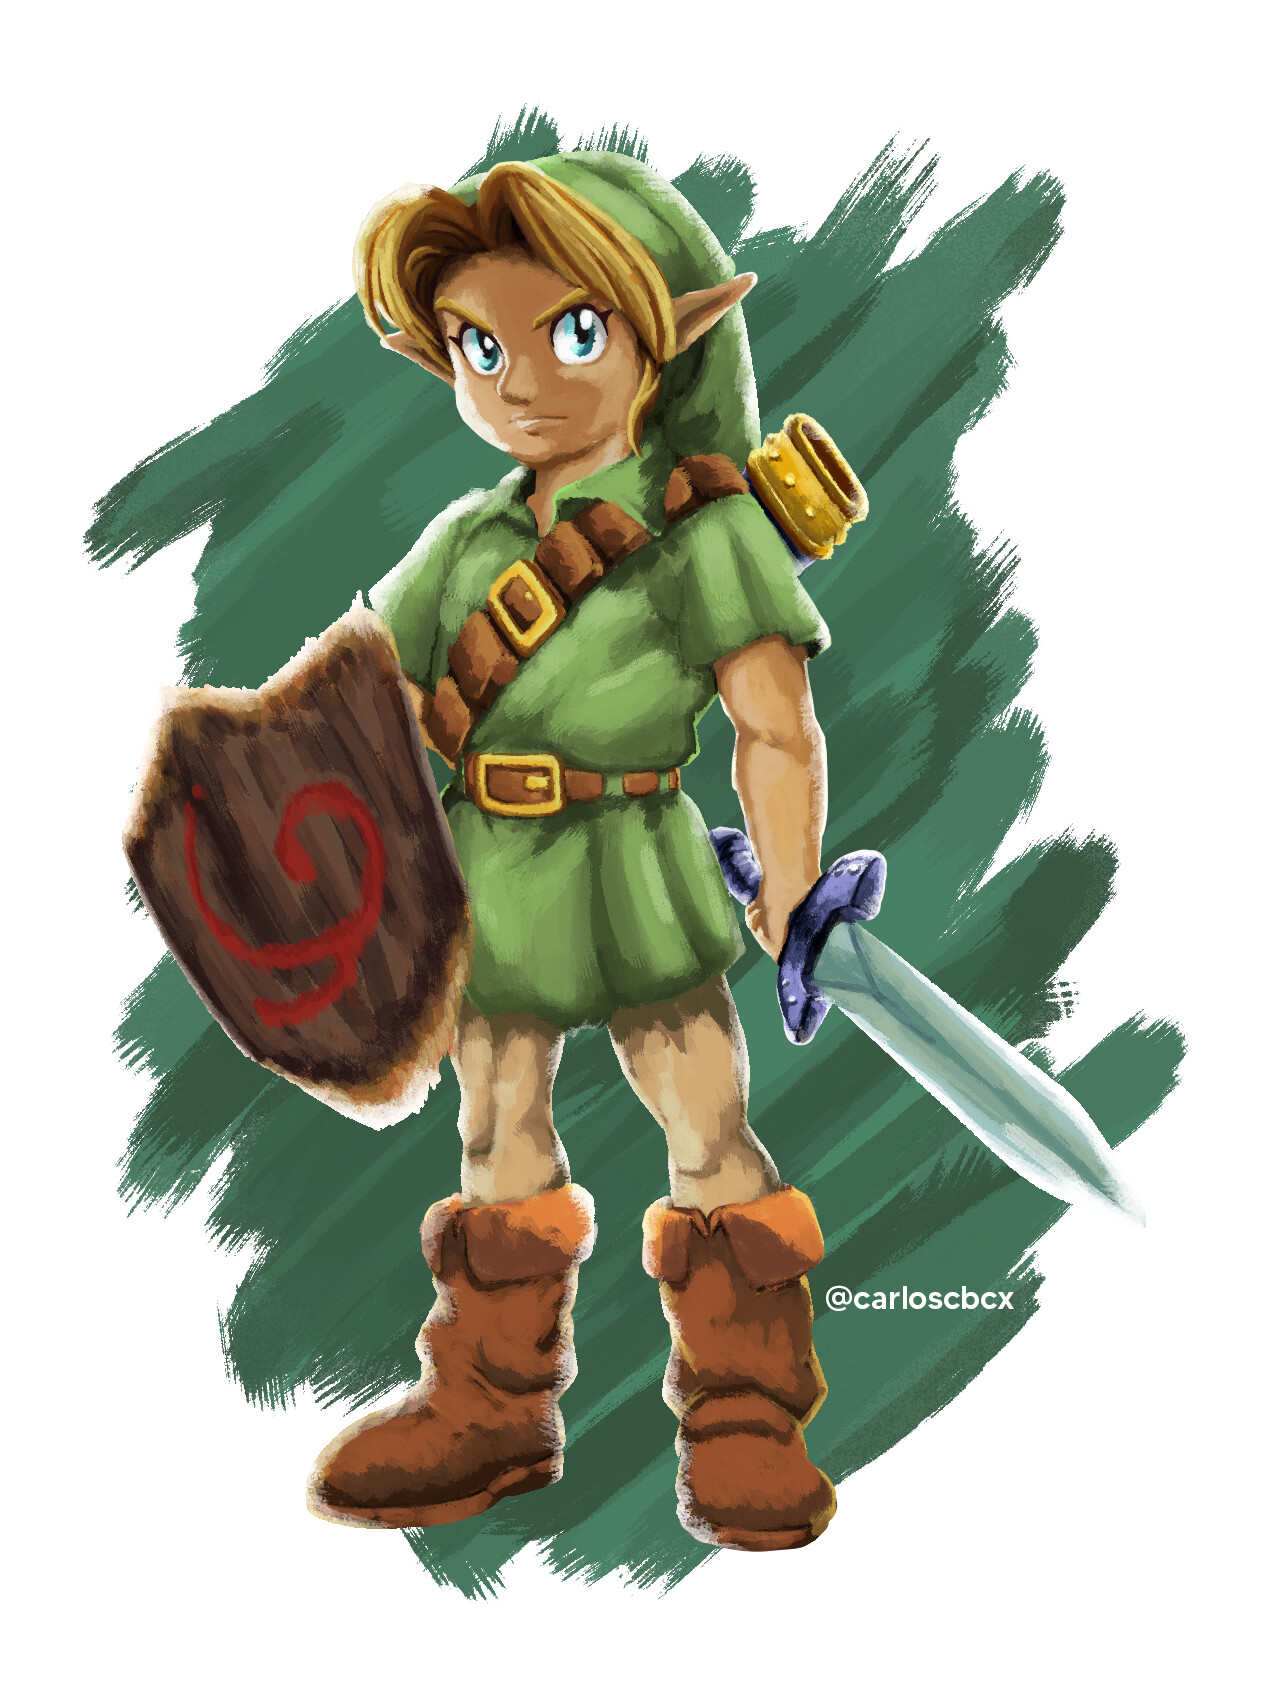 ArtStation - Link - The Legend of Zelda TotK Fanart